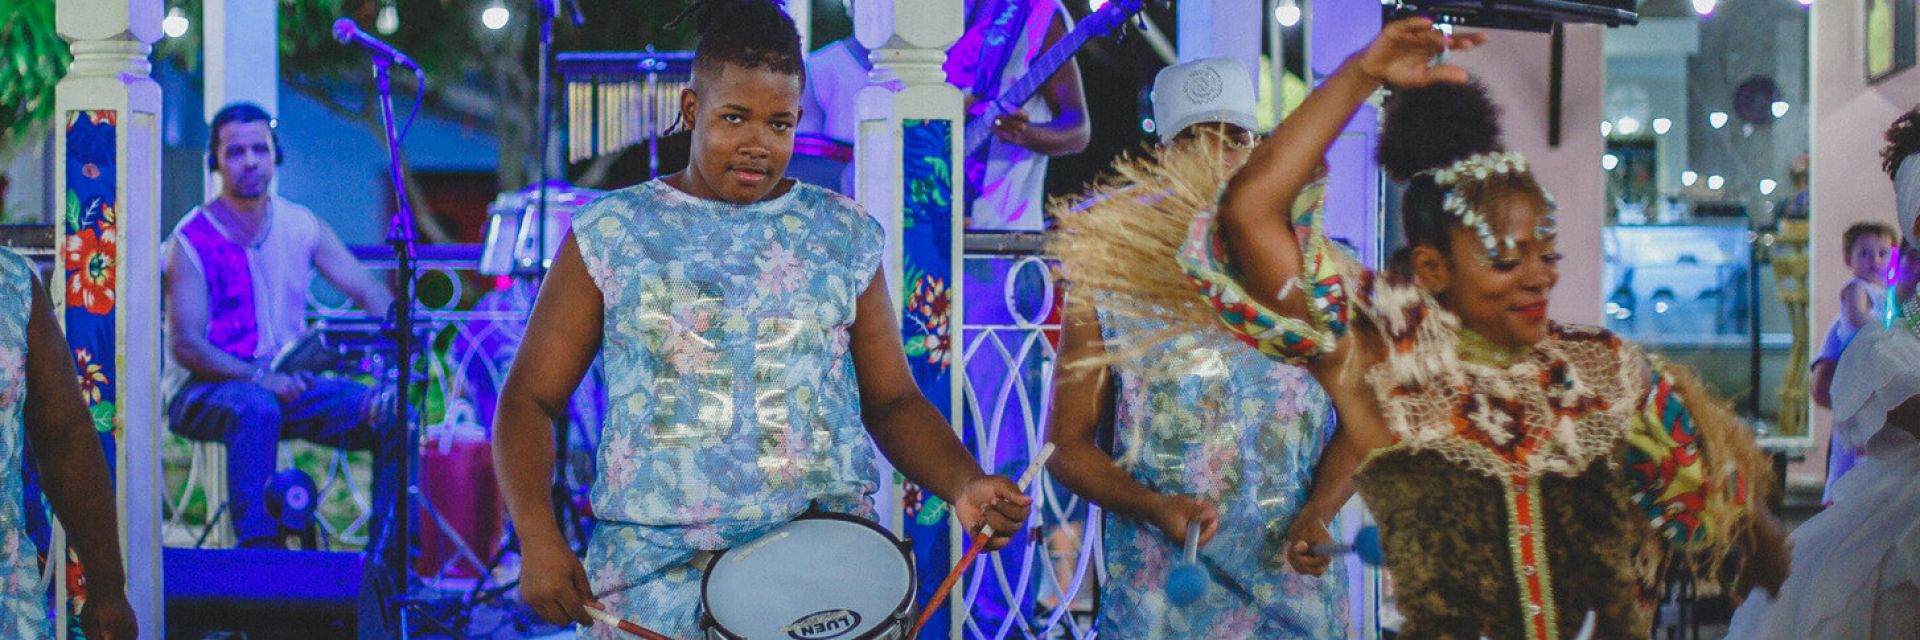 Folclore da Bahia: saiba mais sobre as representações culturais do estado